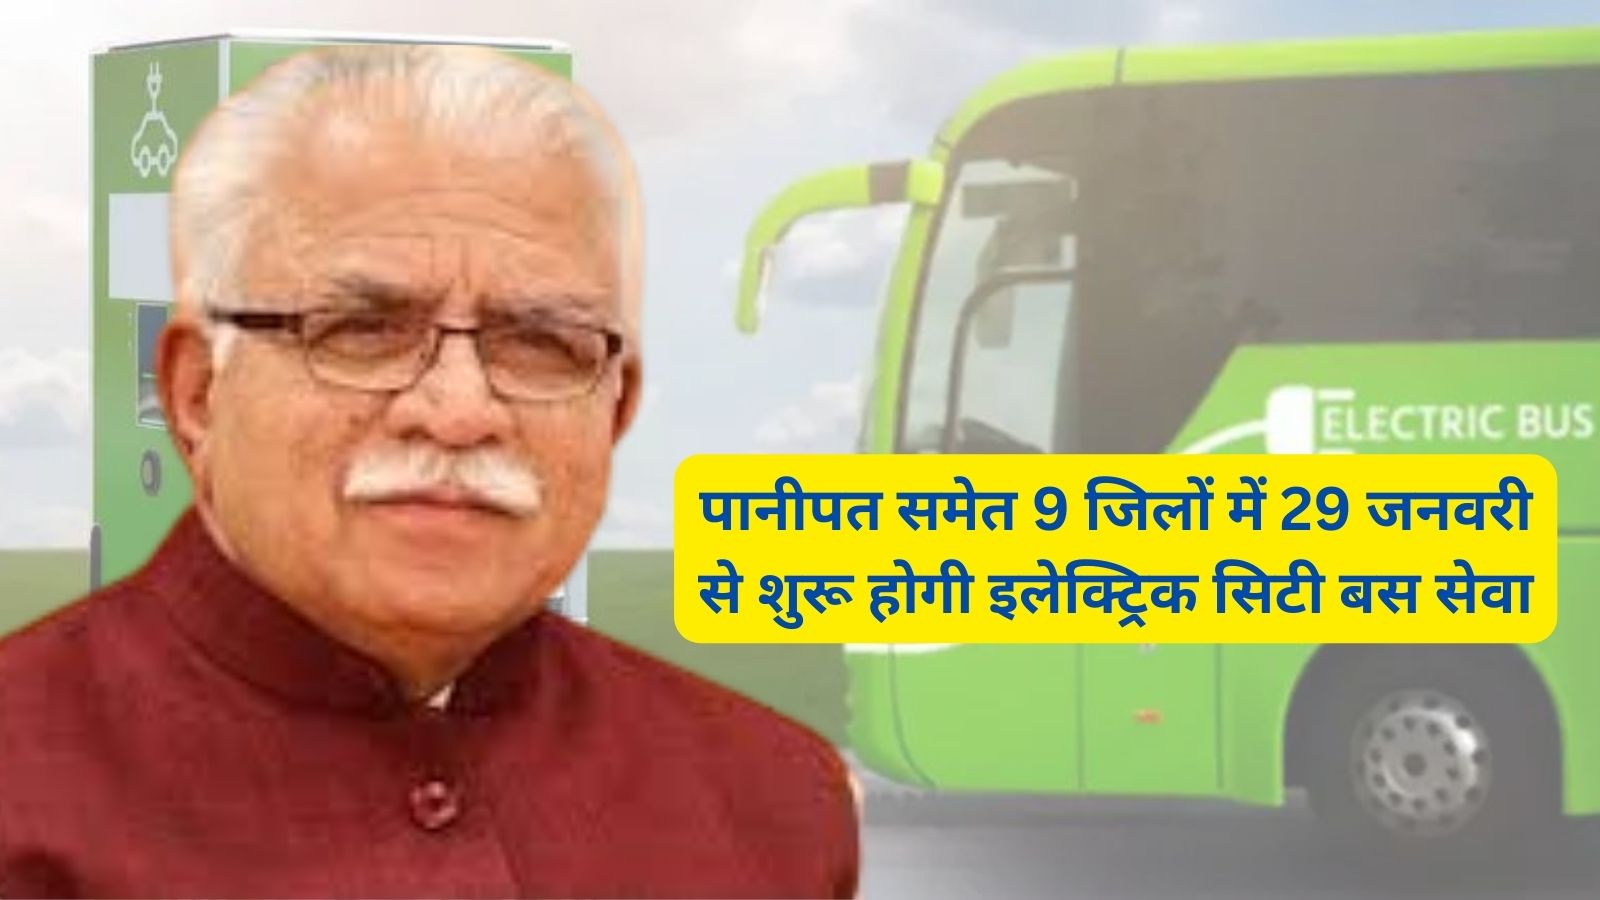 Electric City Bus Service Haryana:पानीपत समेत 9 जिलों में 29 जनवरी से शुरू होगी इलेक्ट्रिक सिटी बस सेवा,सीएम मनोहर लाल खट्टर हरी झंडी दिखाकर करेगे रवाना